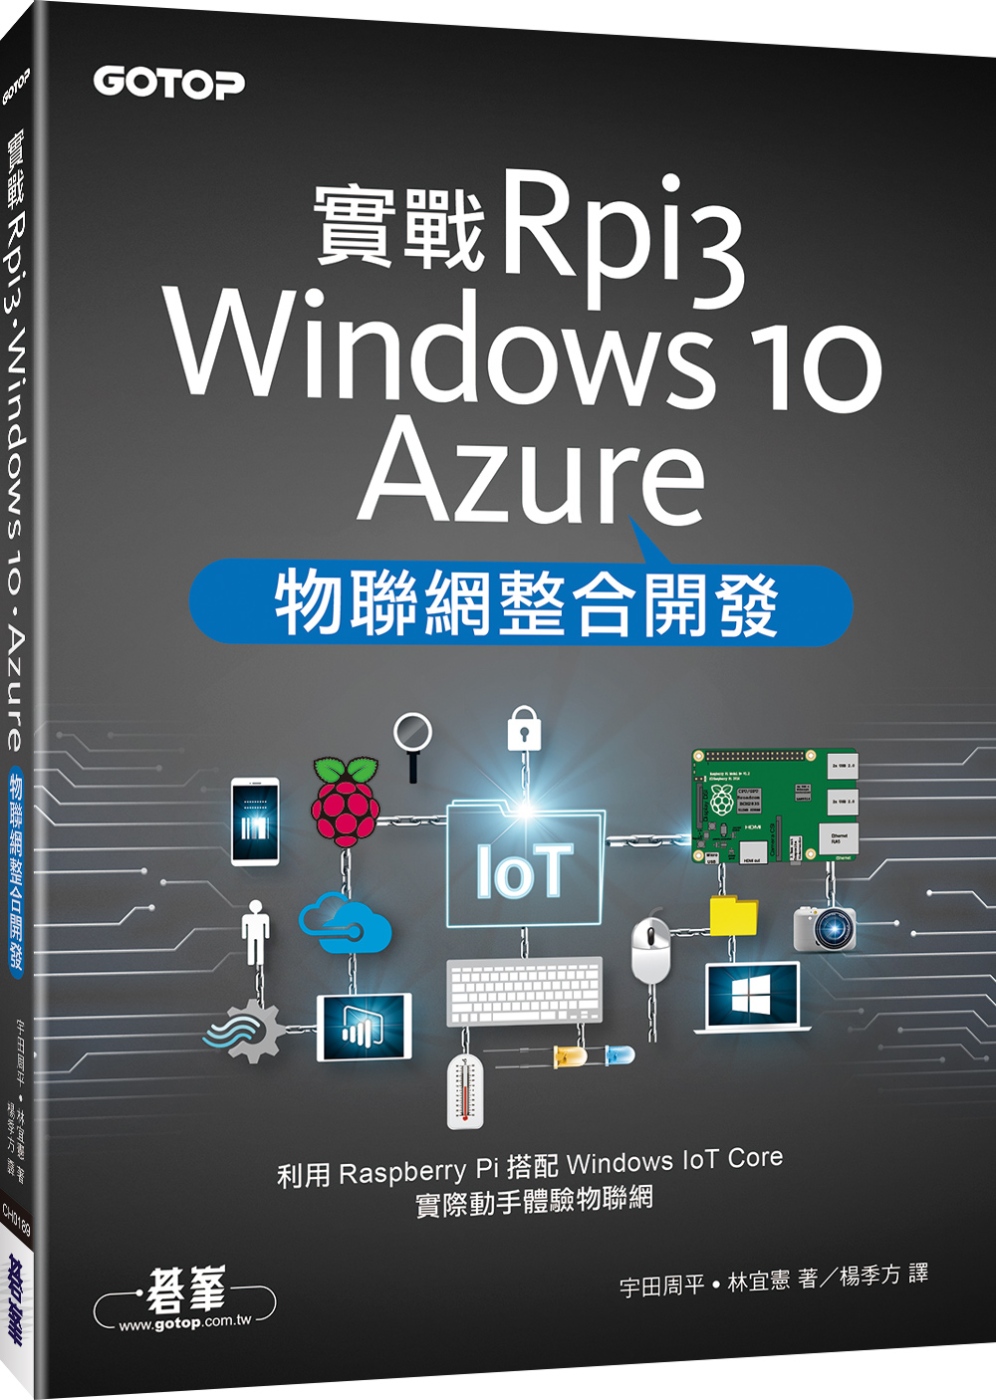 實戰Rpi3、Windows 10、Azure物聯網整合開發